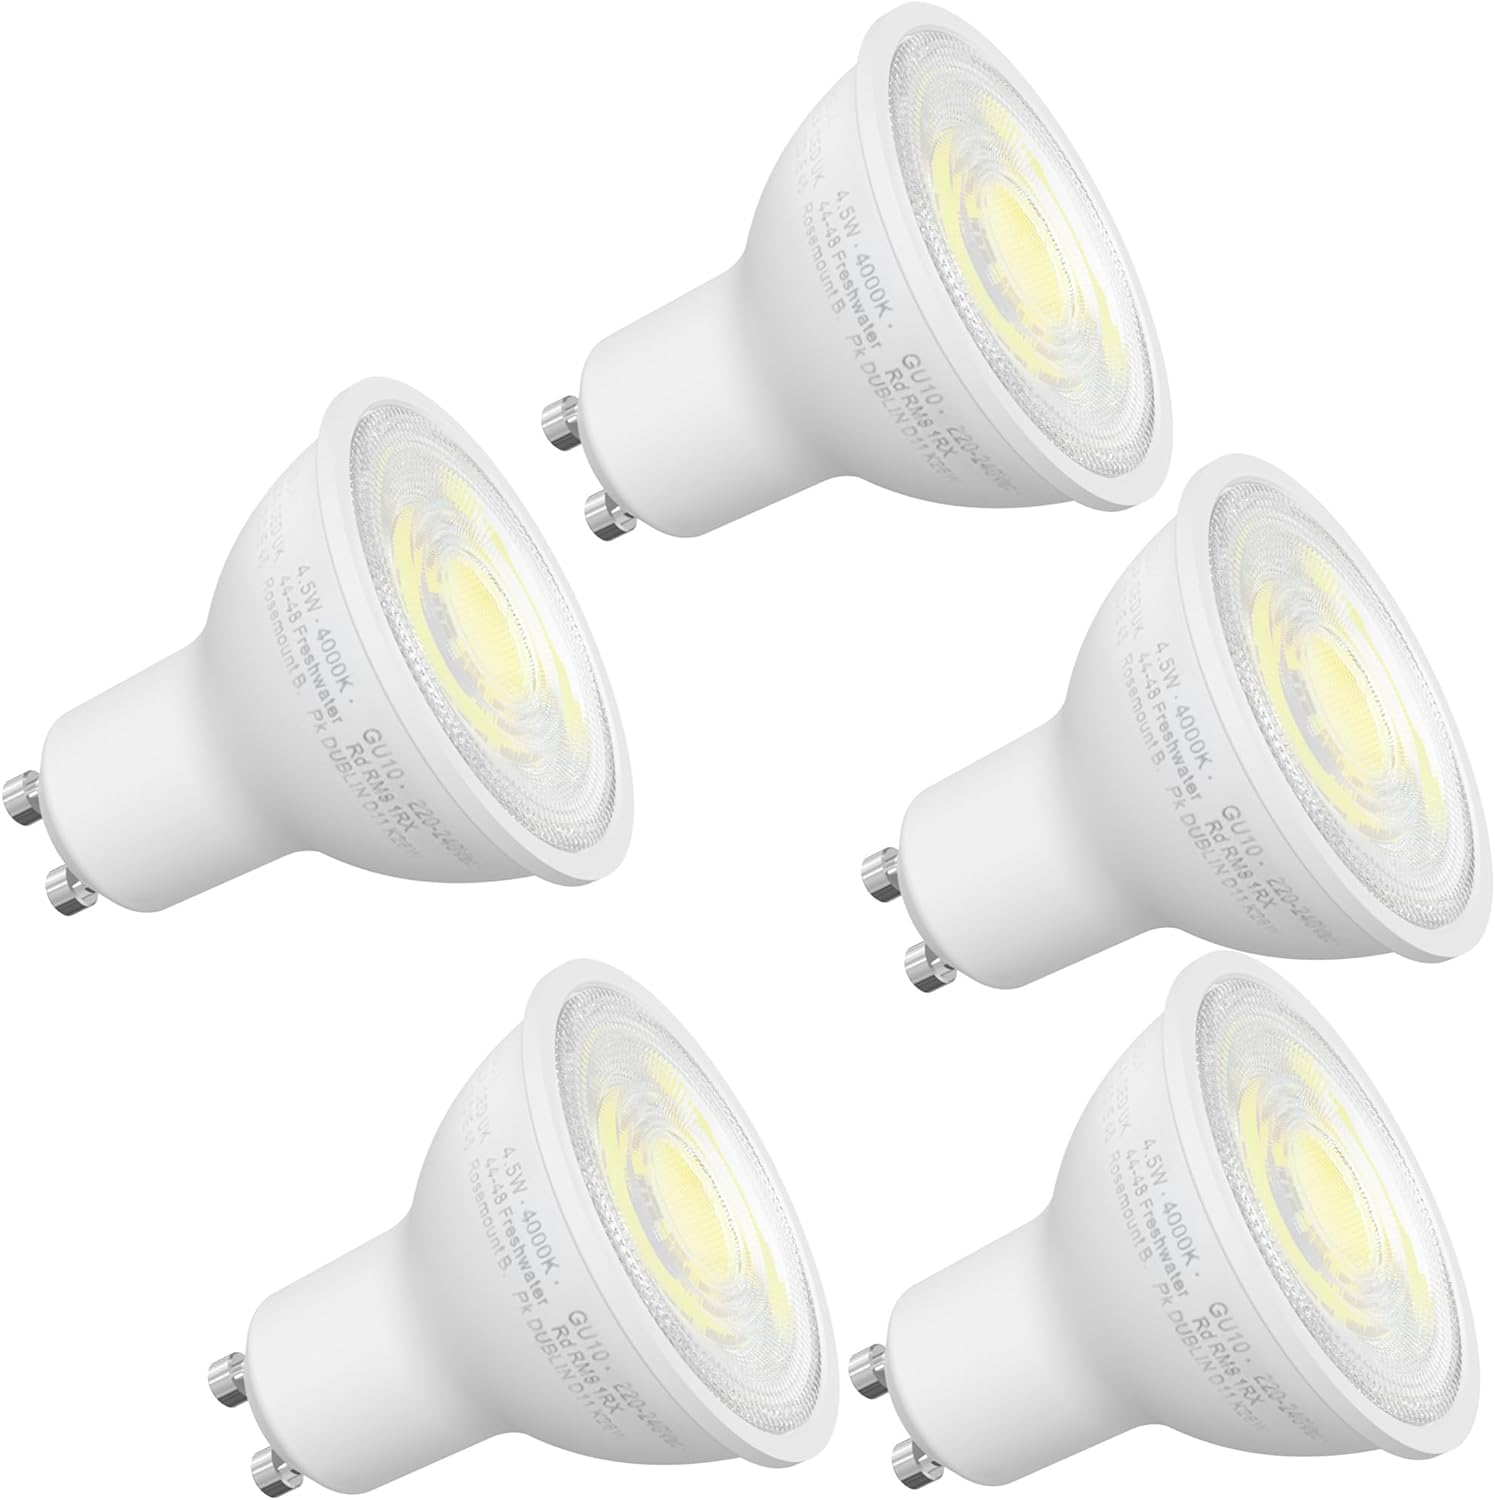 Meridian LED GU10 Lamp Light Bulb Day Light 6500K, 50W Halogen Spotlight Equivalent